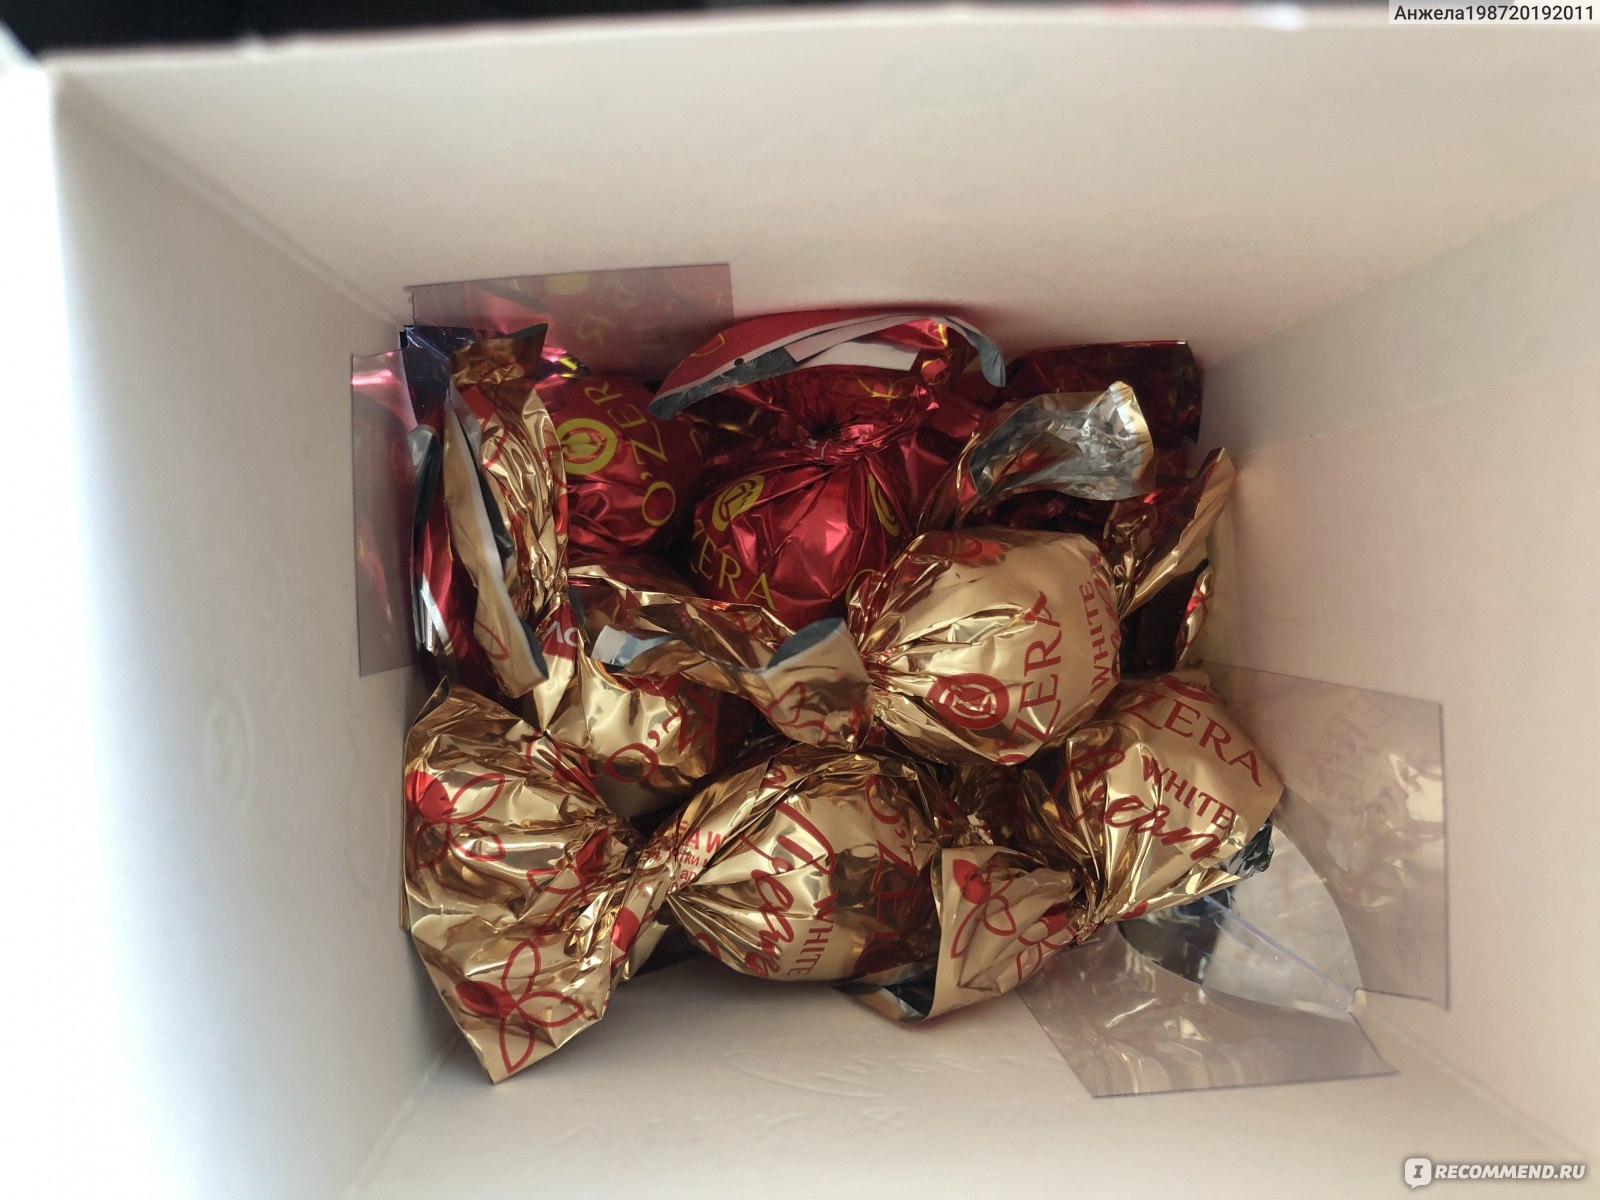 На столе лежала коробка с конфетами саша взял оттуда половину конфет потом половину оставшихся